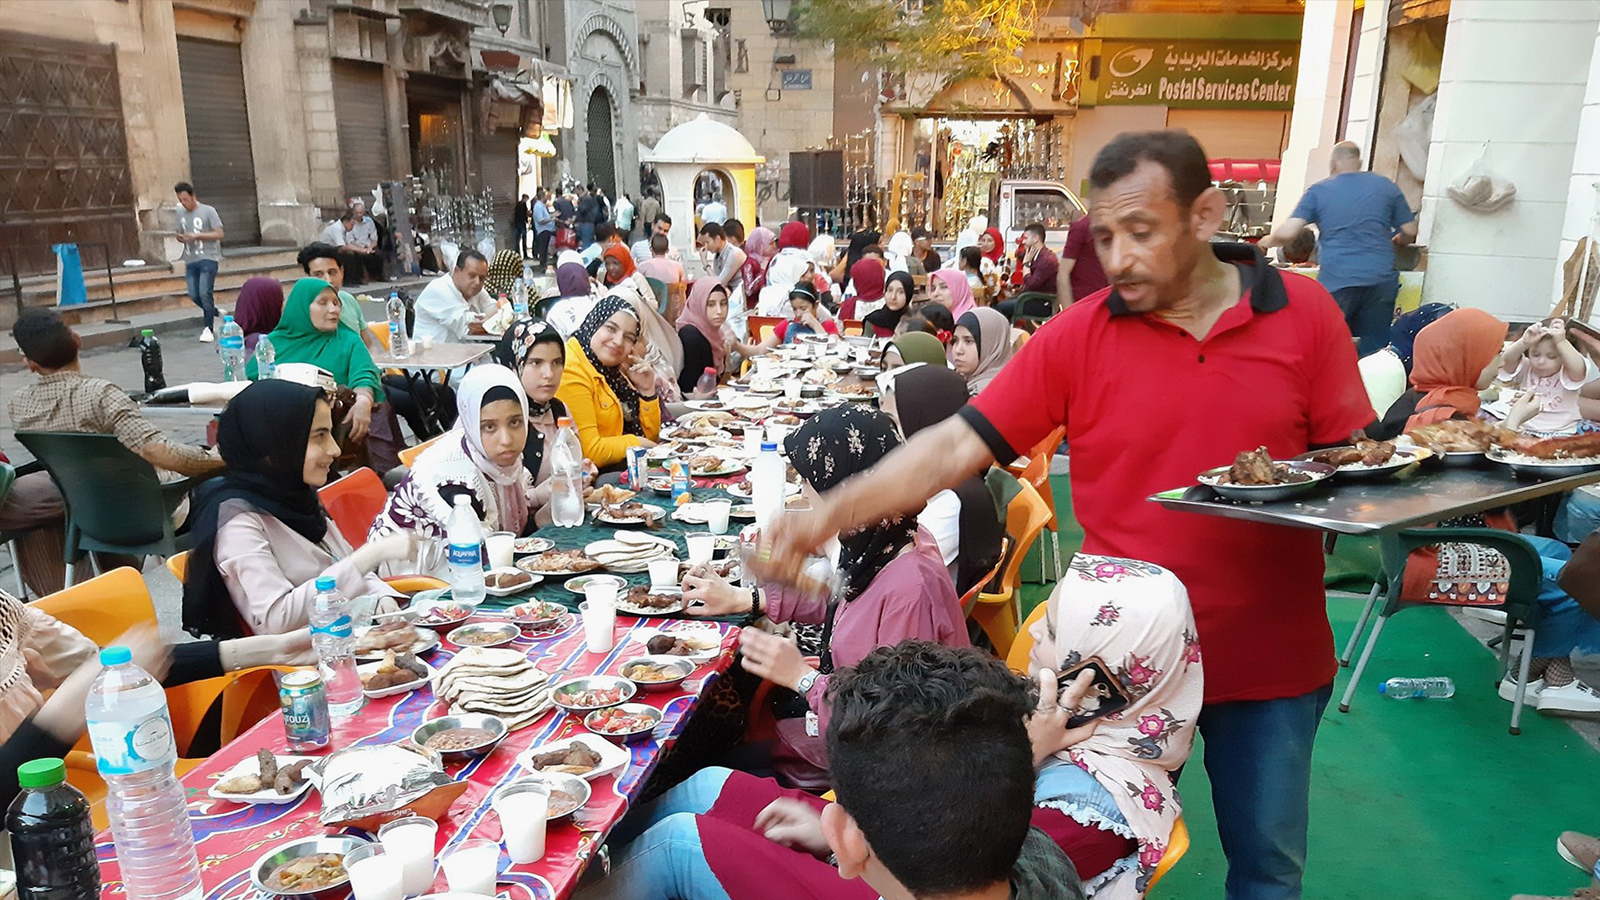 كثير من المصريين يحرصون على الإفطار والسحور مع العائلات والأصدقاء في شارع المعز (مواقع التواصل)يحرصون 